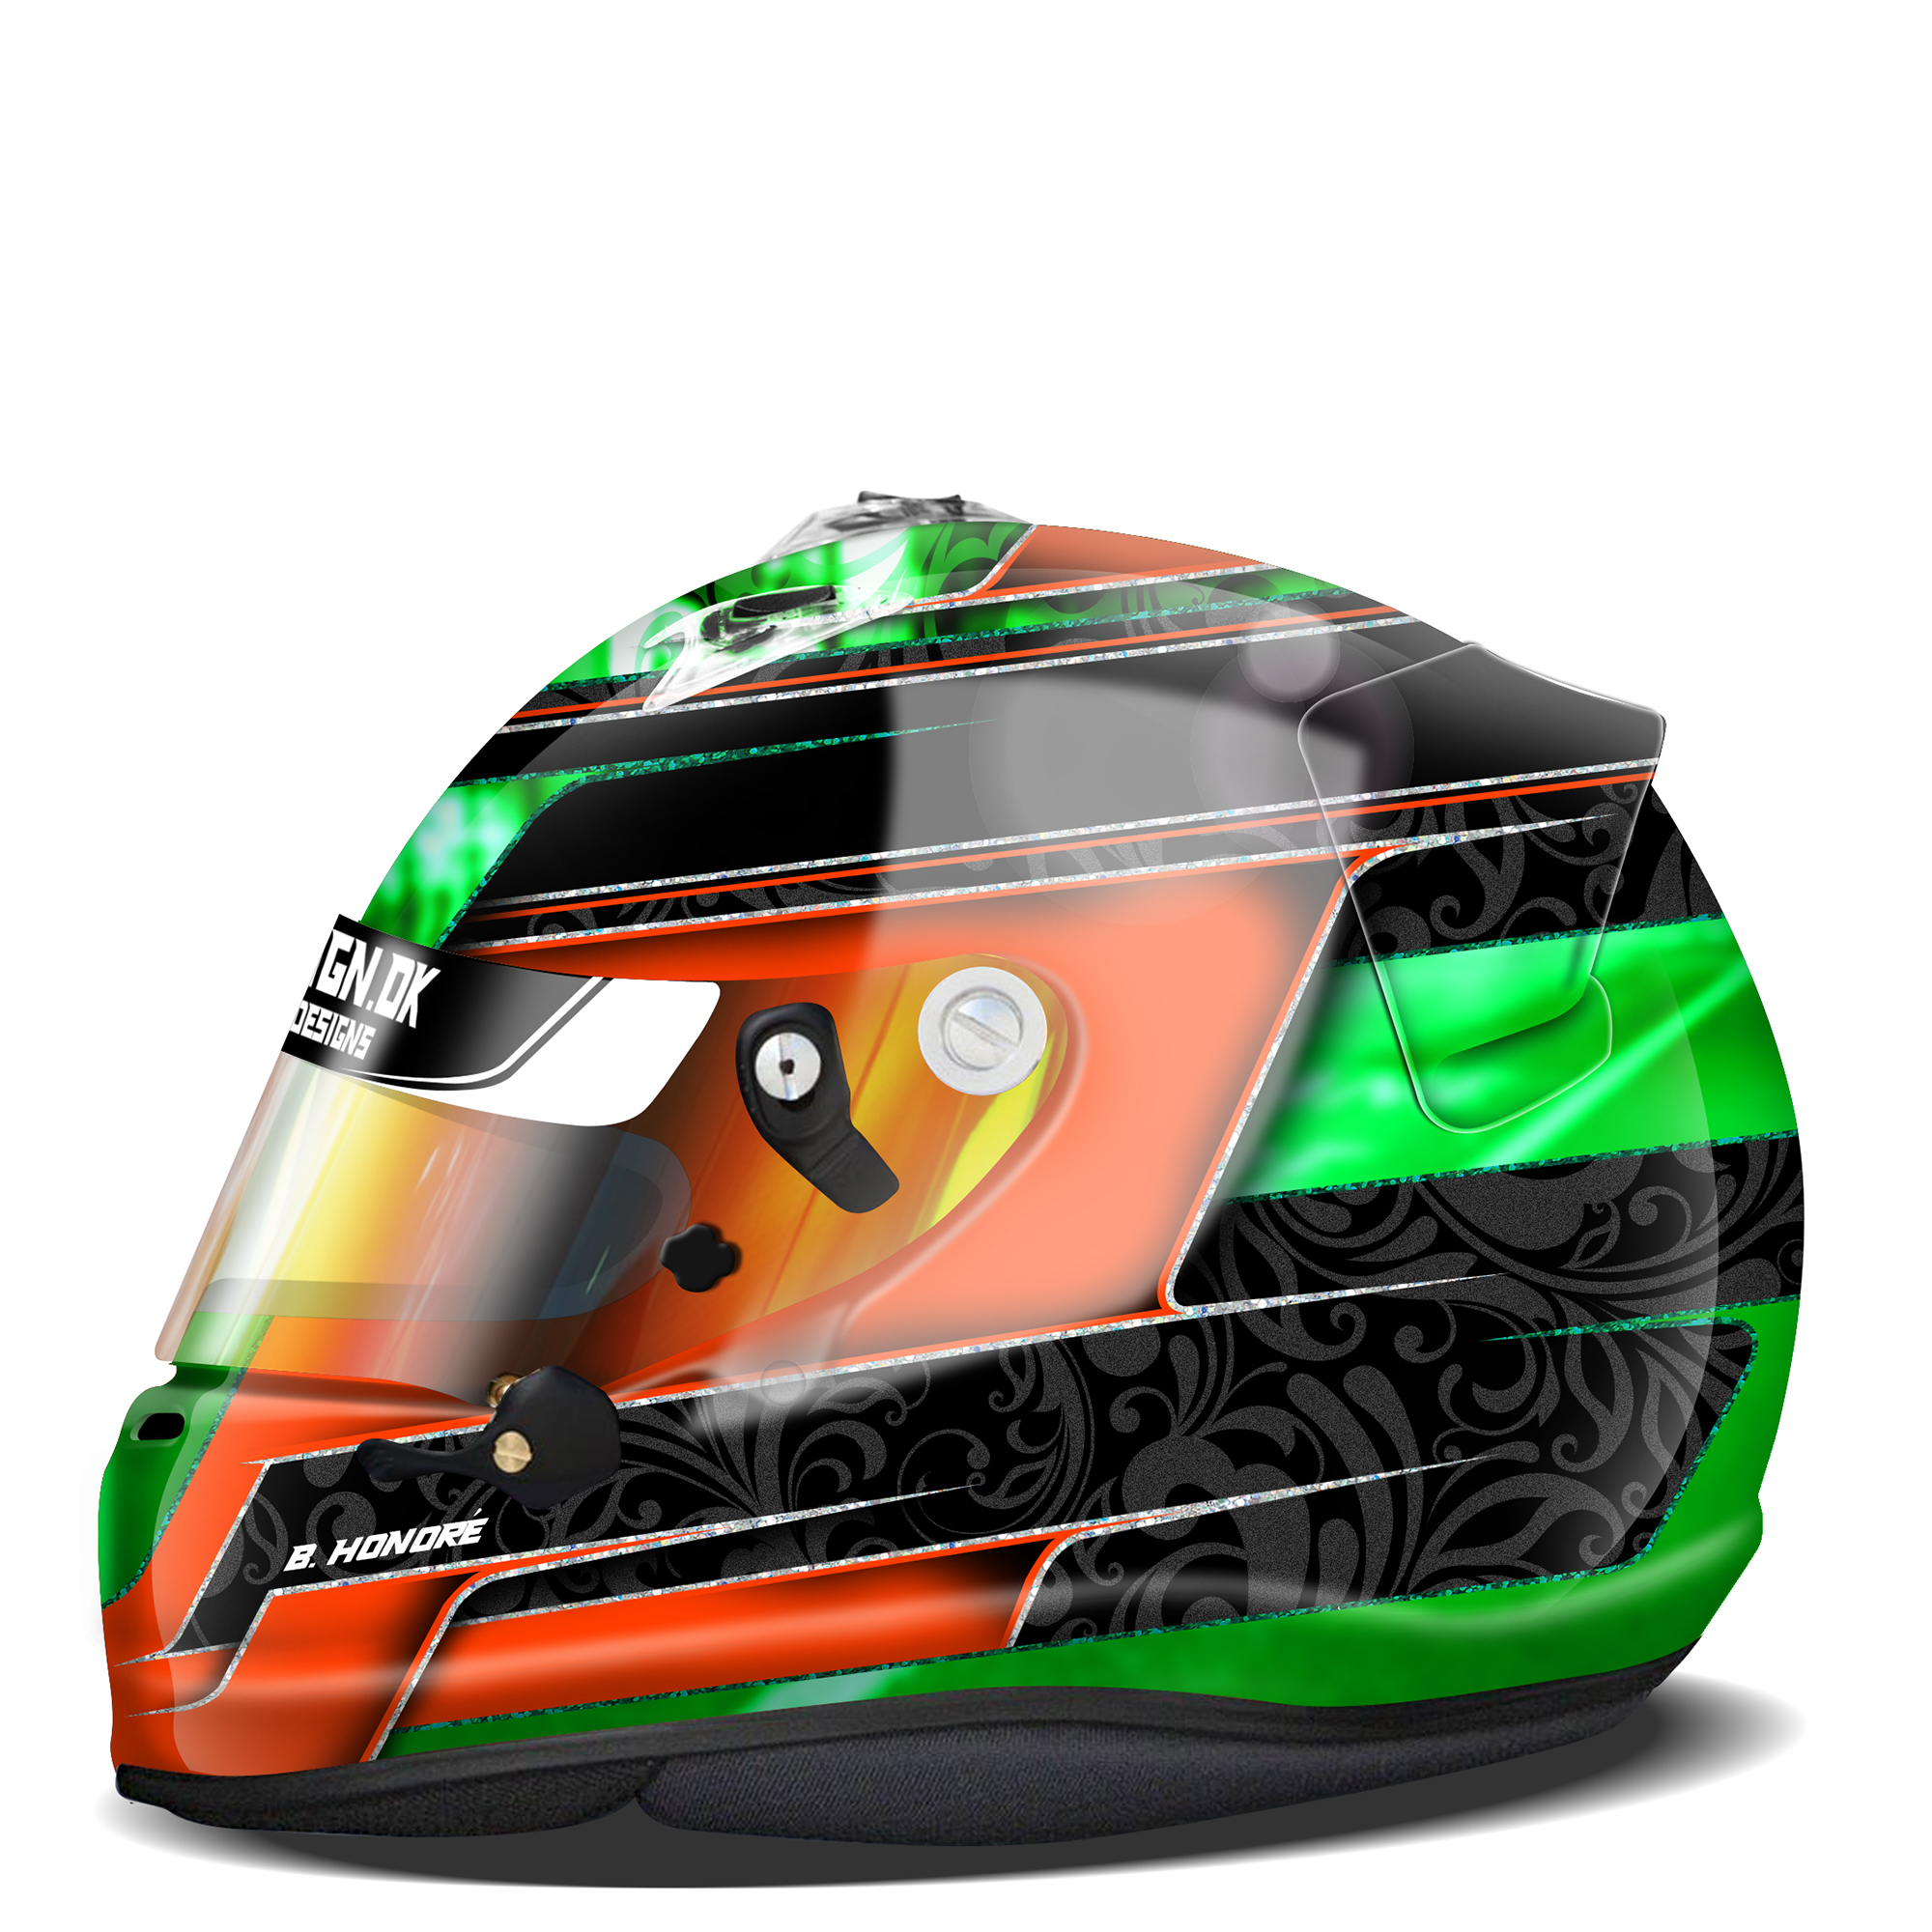 Custom Helmet design